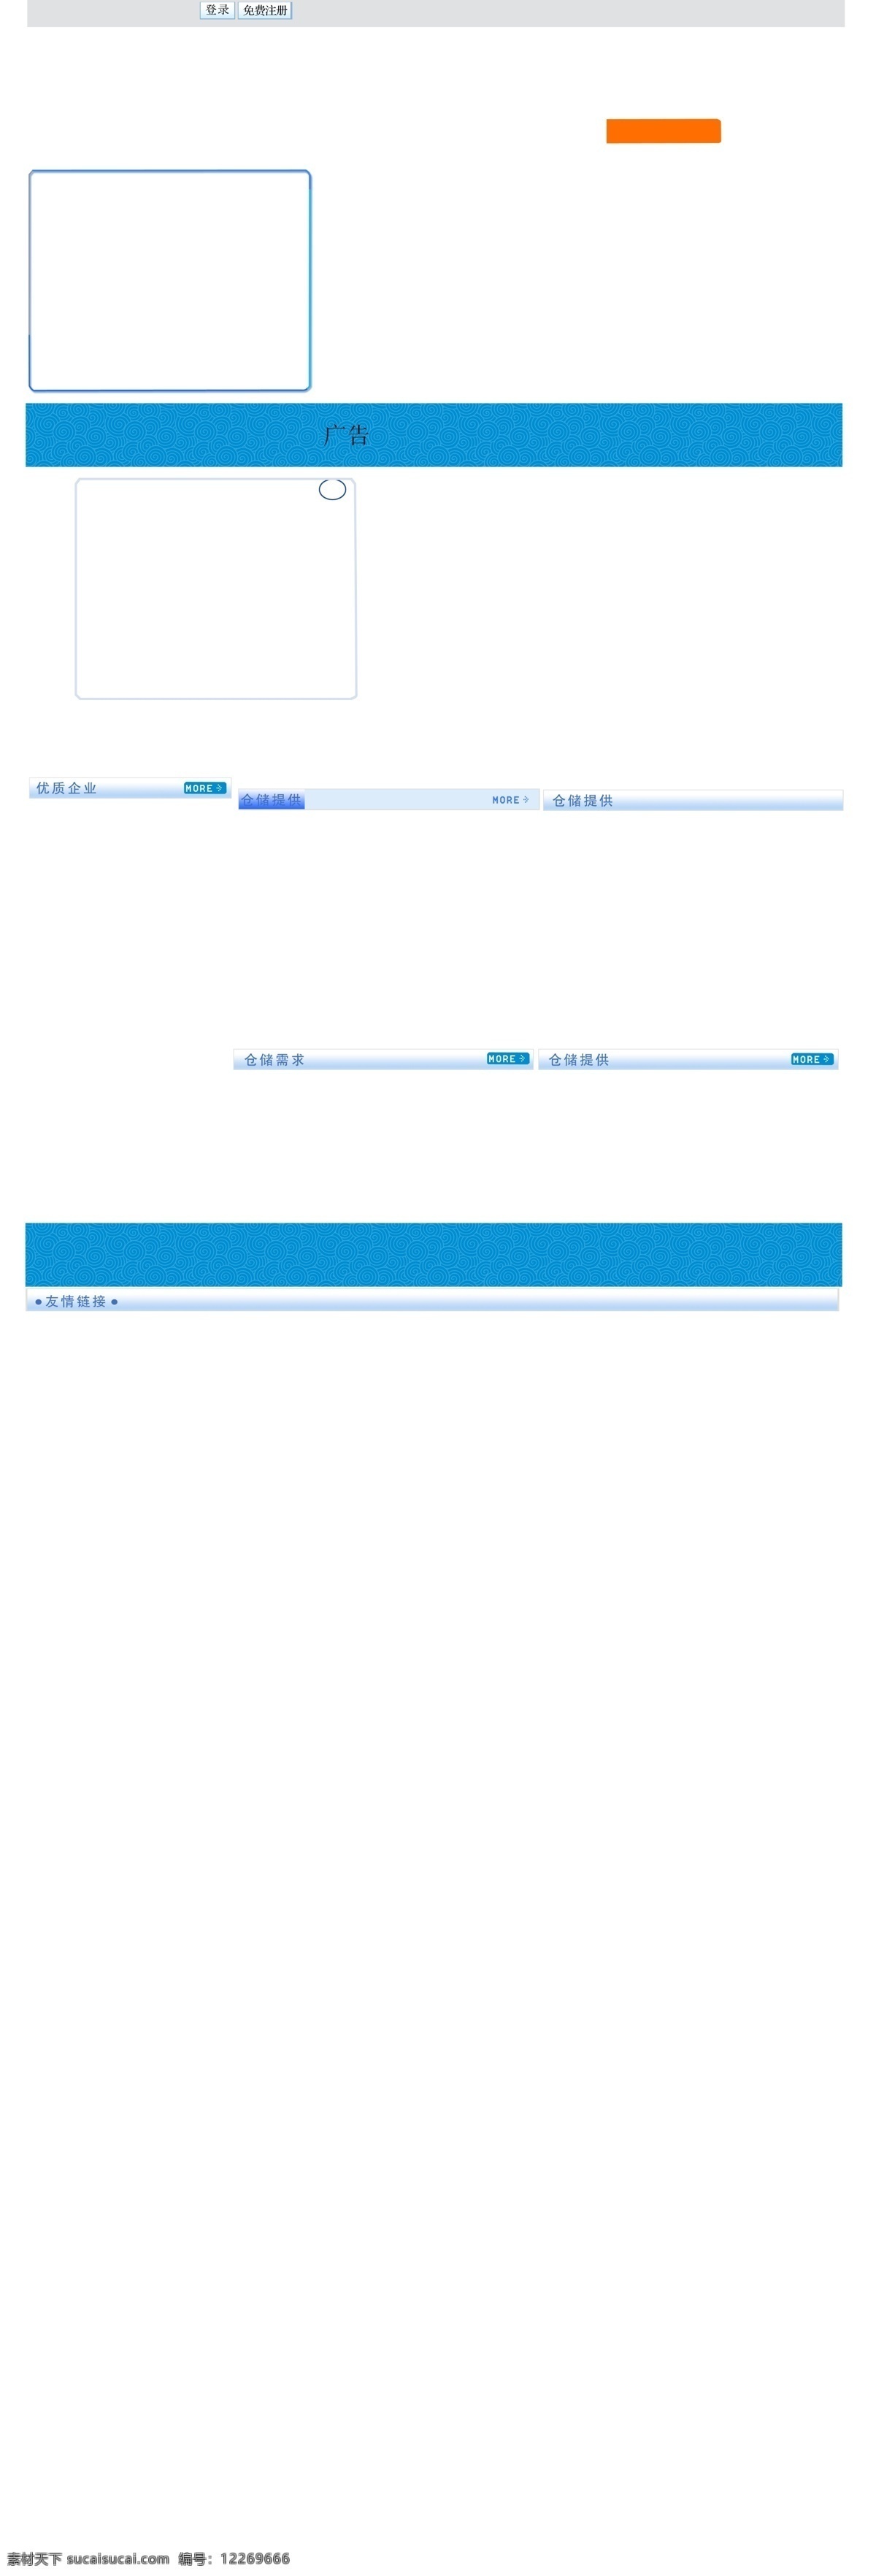 物流 网 网页模板 网页设计 源文件 中文模版 物流网设计 物流网 蓝色 模版 psd源文件